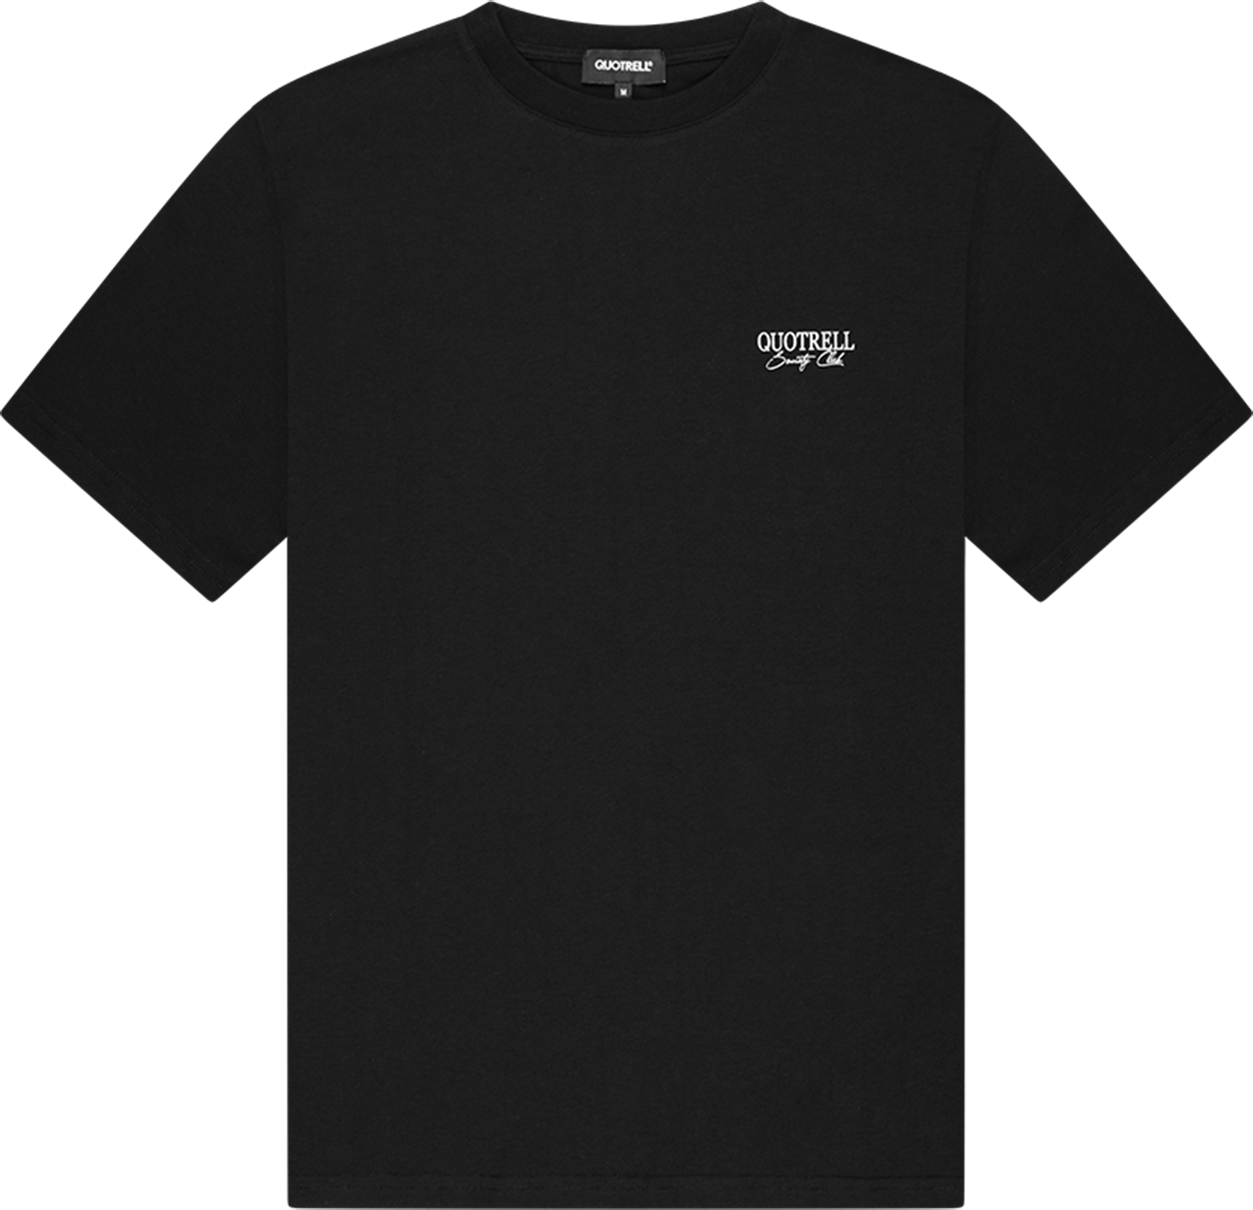 Quotrell Victorie T-shirt | Black/white Zwart